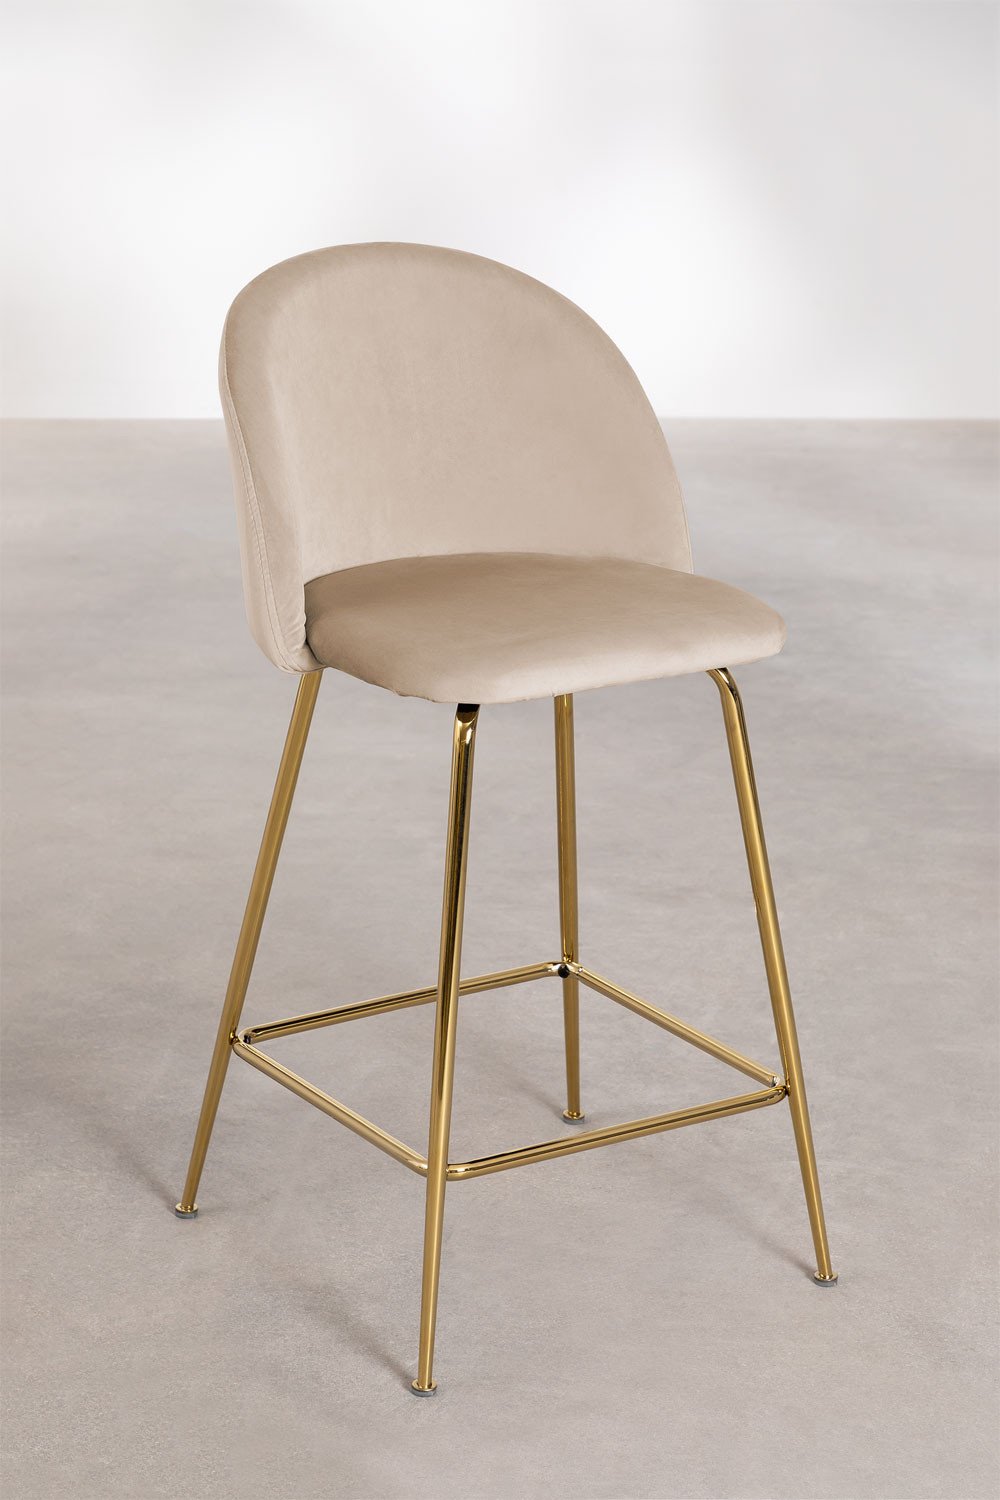 Aksamitny wysoki stolek Kana Design, obrazek w galerii 1